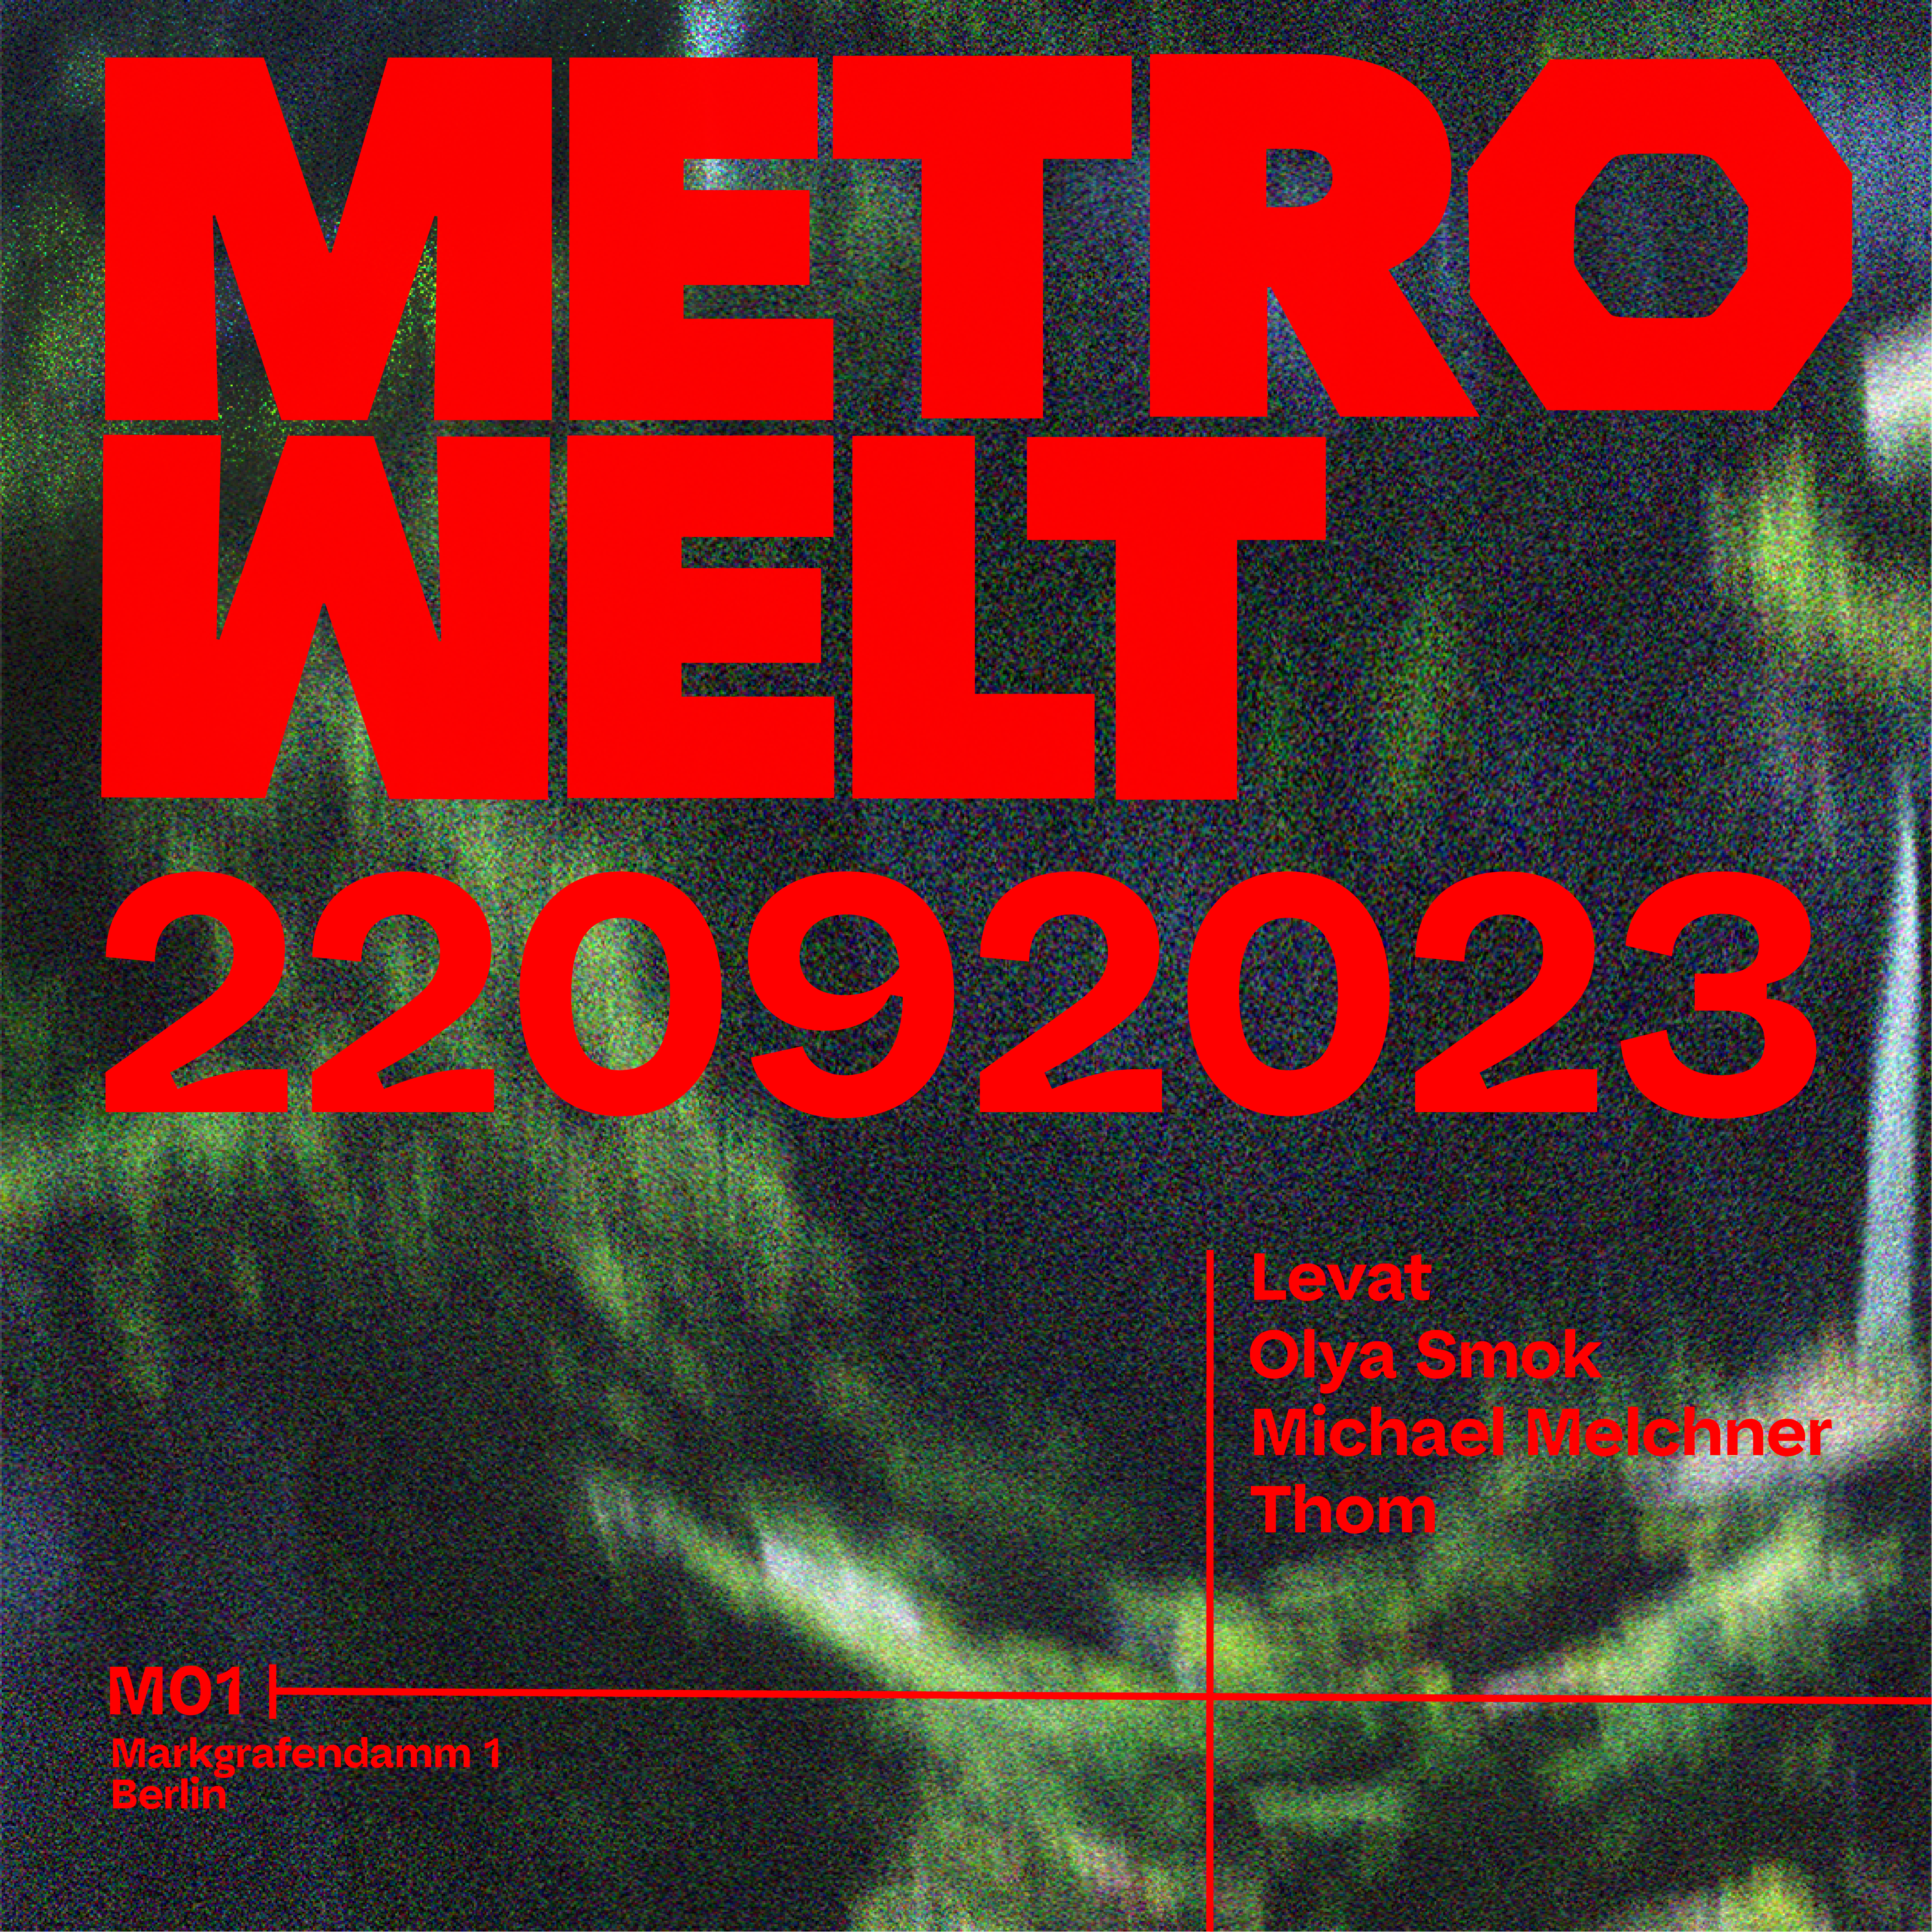 Metrowelt - フライヤー裏